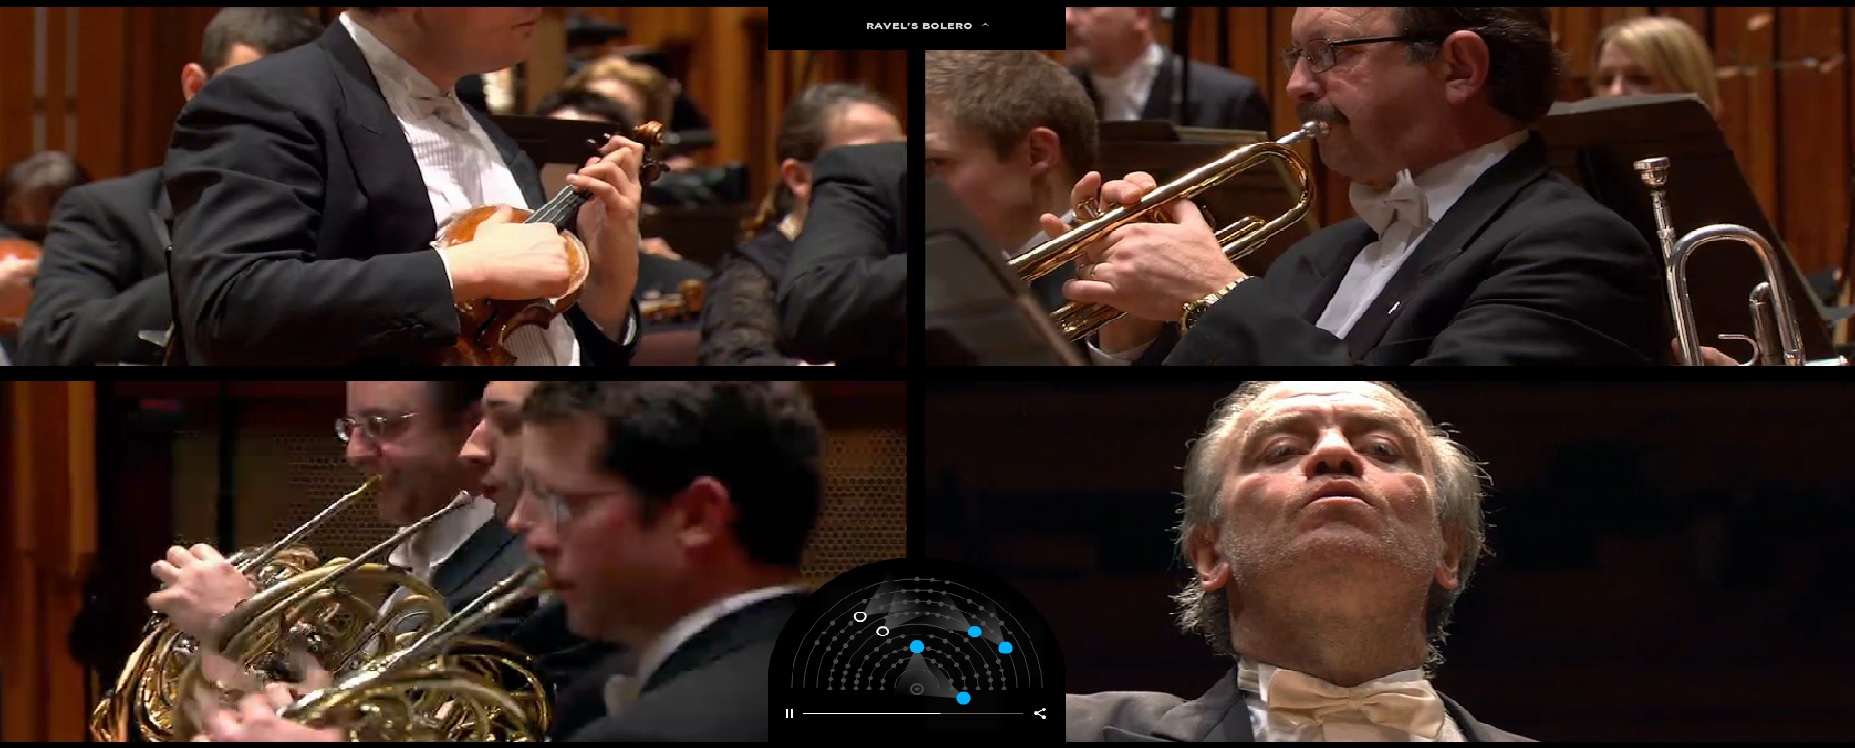 Sitio interactivo que permite escoger desde dónde mirar a la Orquesta Sinfónica de Londres tocando